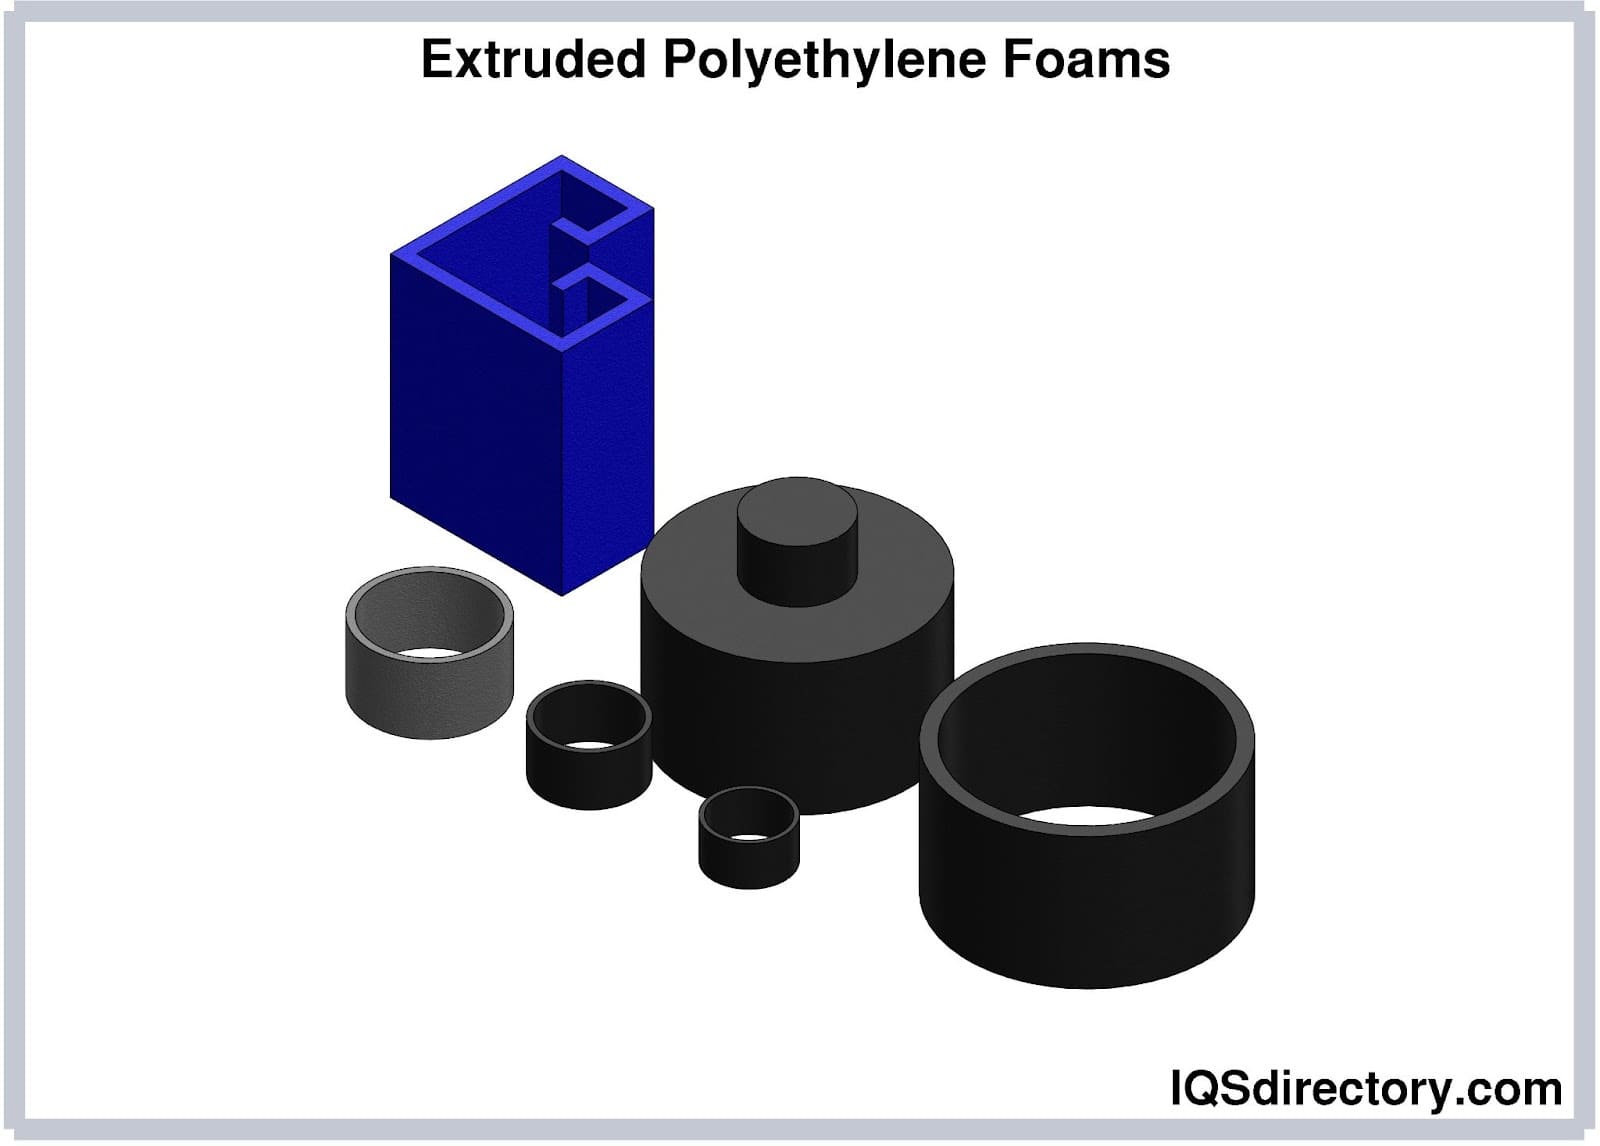 Extruded Polyethylene Foams